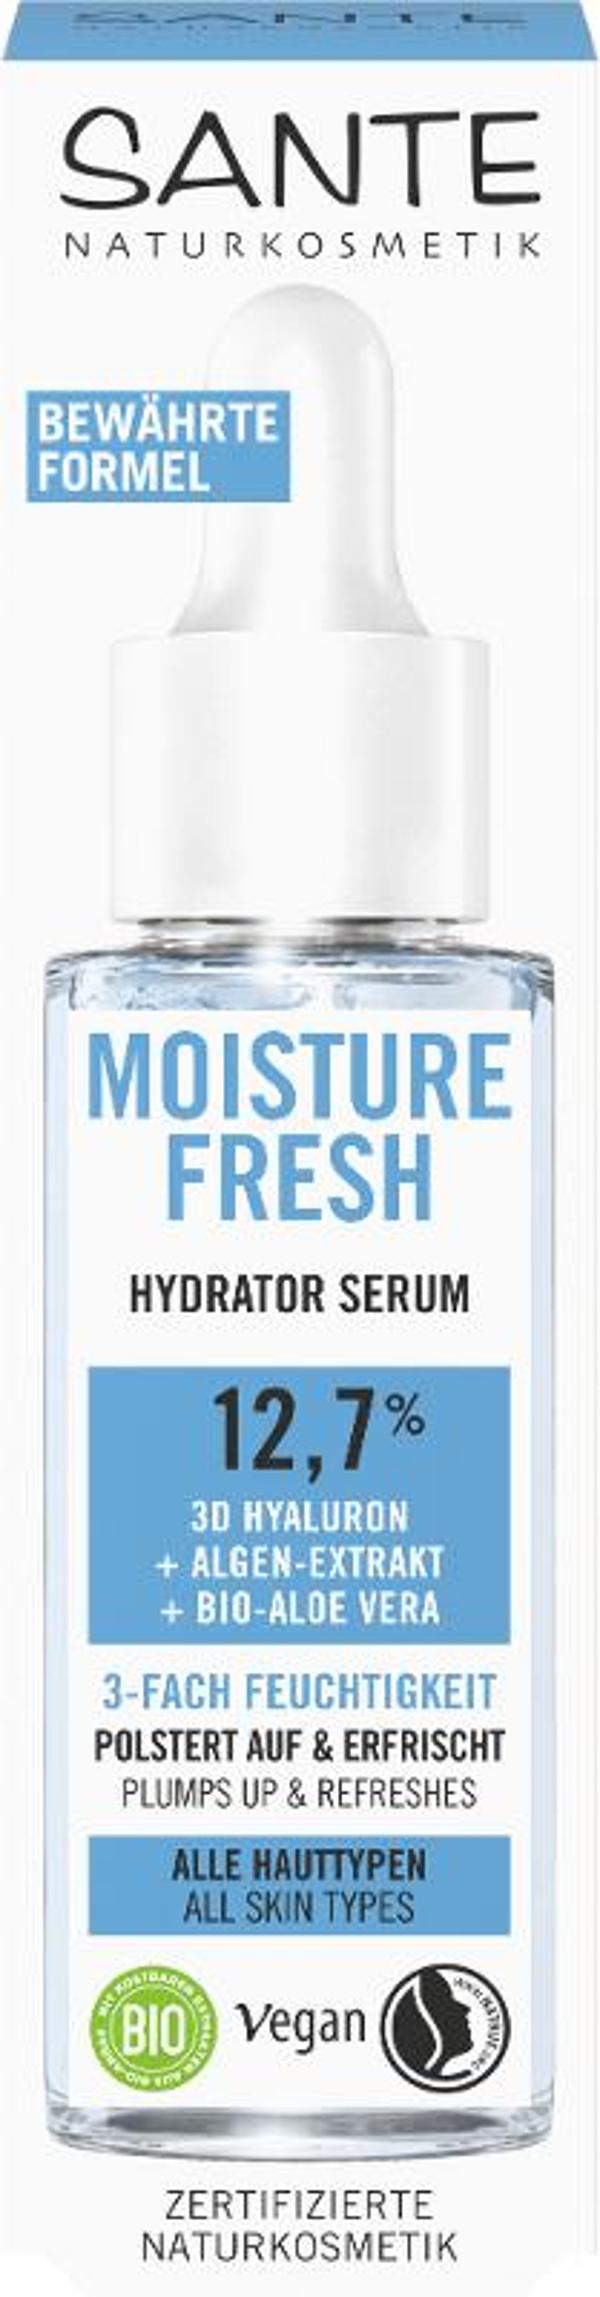 Produktfoto zu Moisture Fresh Hydrator Serum 3D Hyaluron 30ml